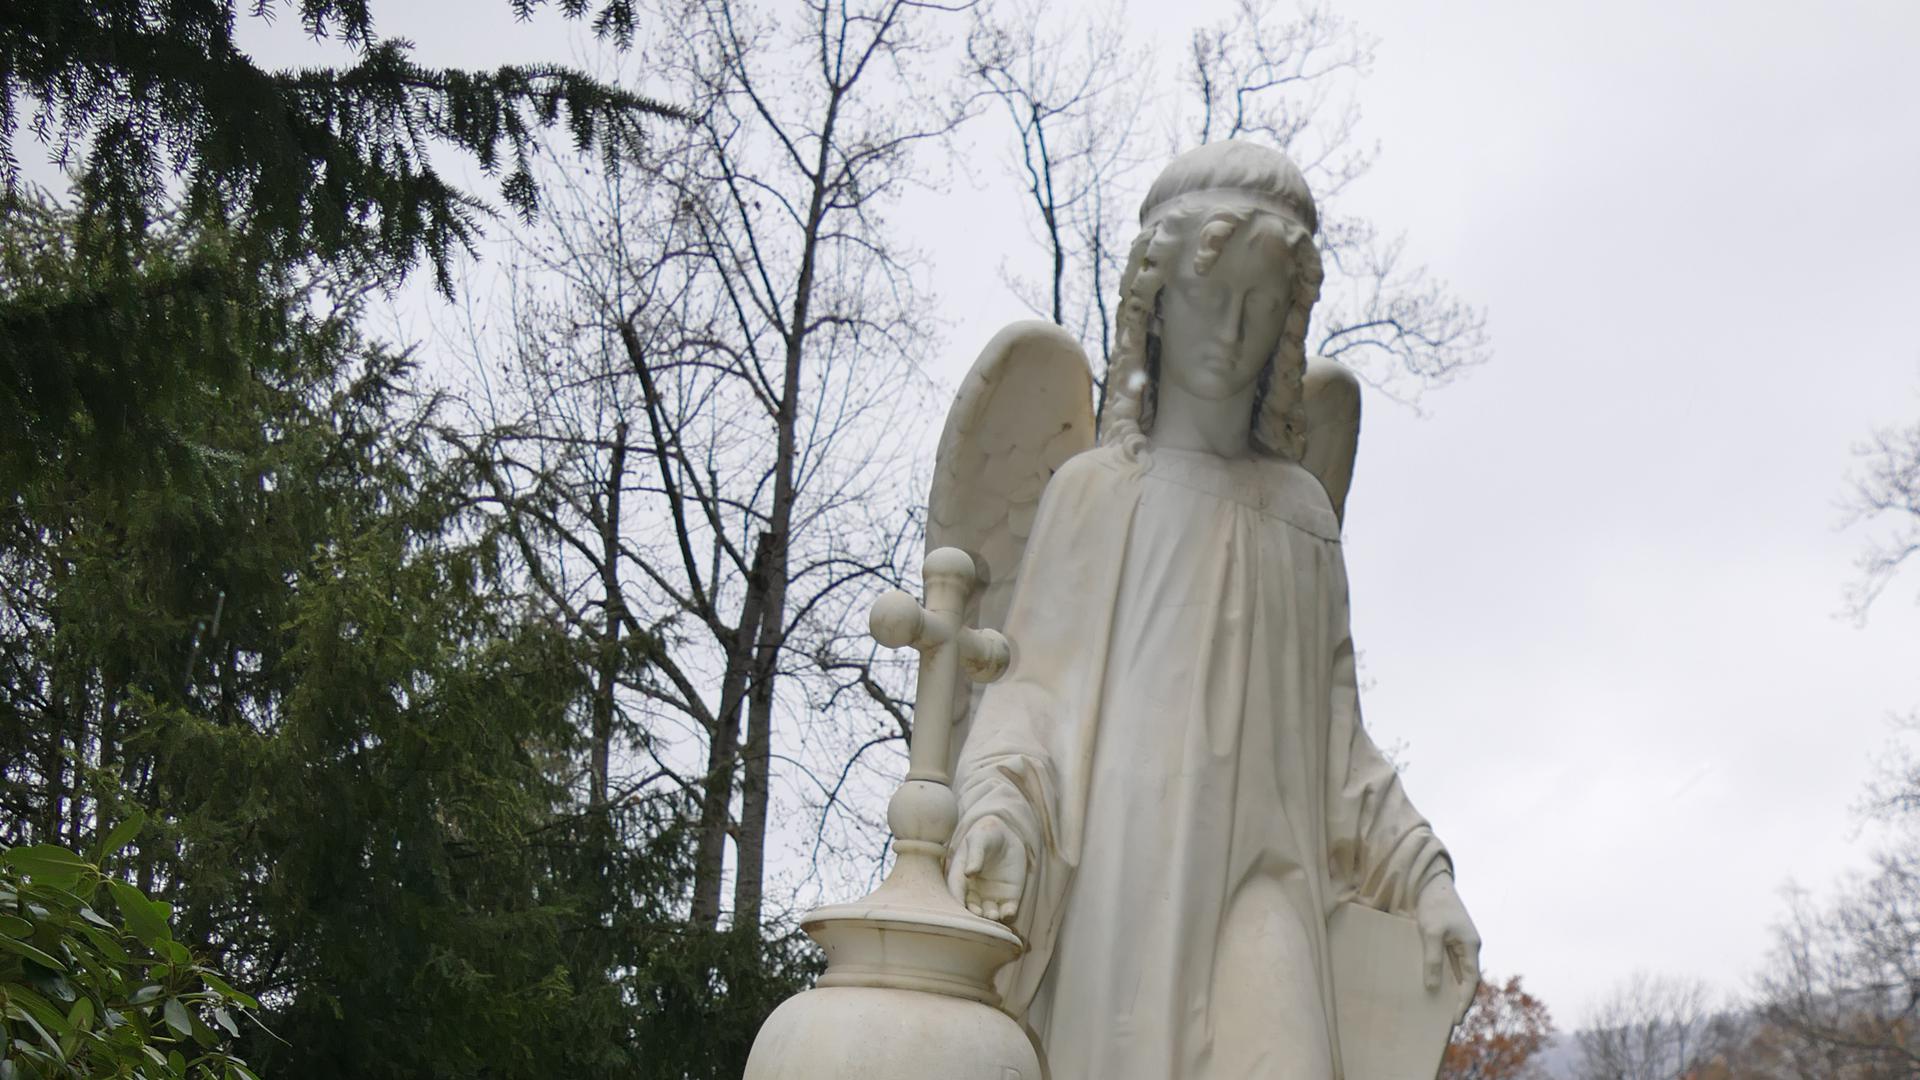 Am Eingang des Hauptfriedhofs begrüßt ein Engel die Besucher